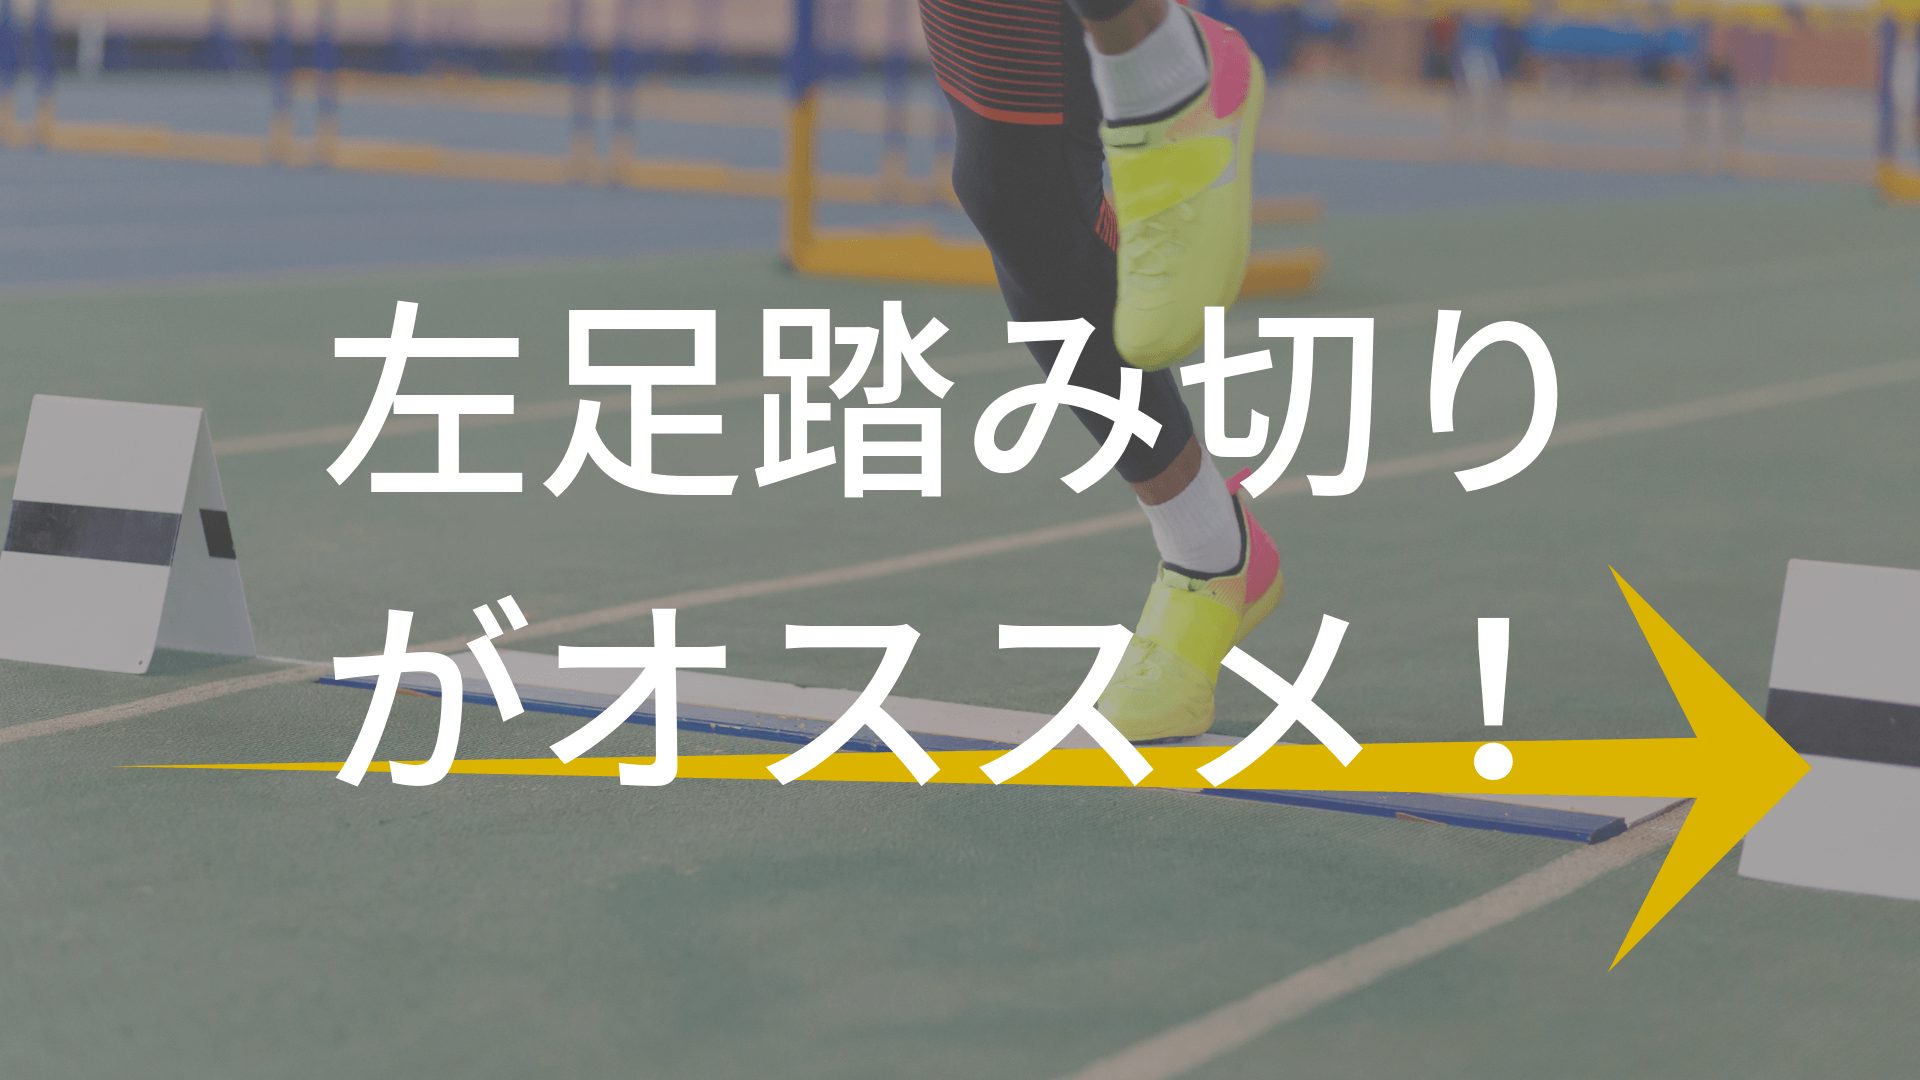 走り幅跳び初心者が踏切足に迷ったら 左足踏切 をお勧めする理由 東京で小学生の足を確実に速くするならgoogle 4 9の陸上アカデミア